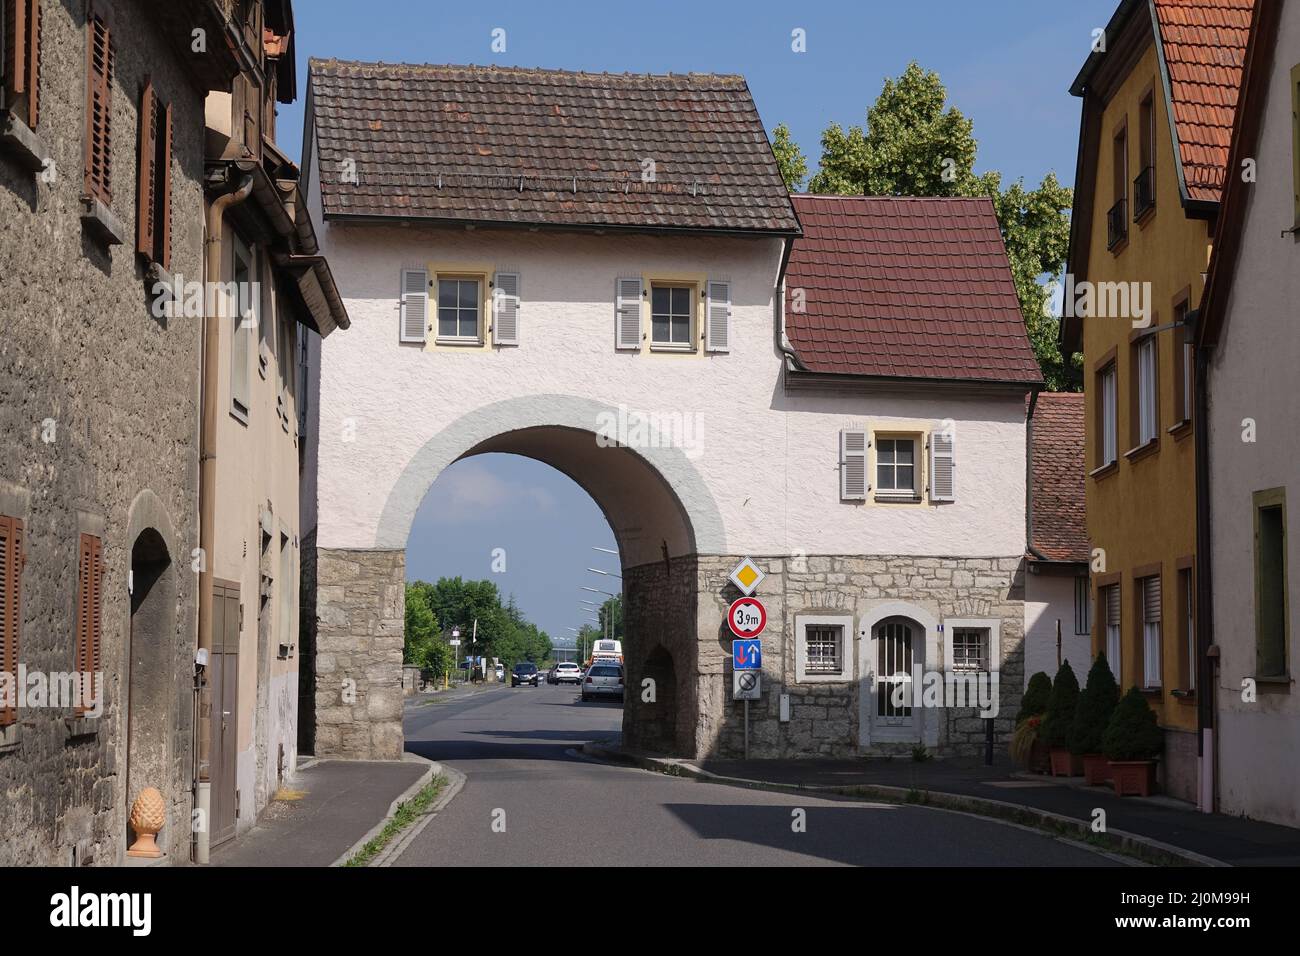 City gate in Eibelstadt Stock Photo